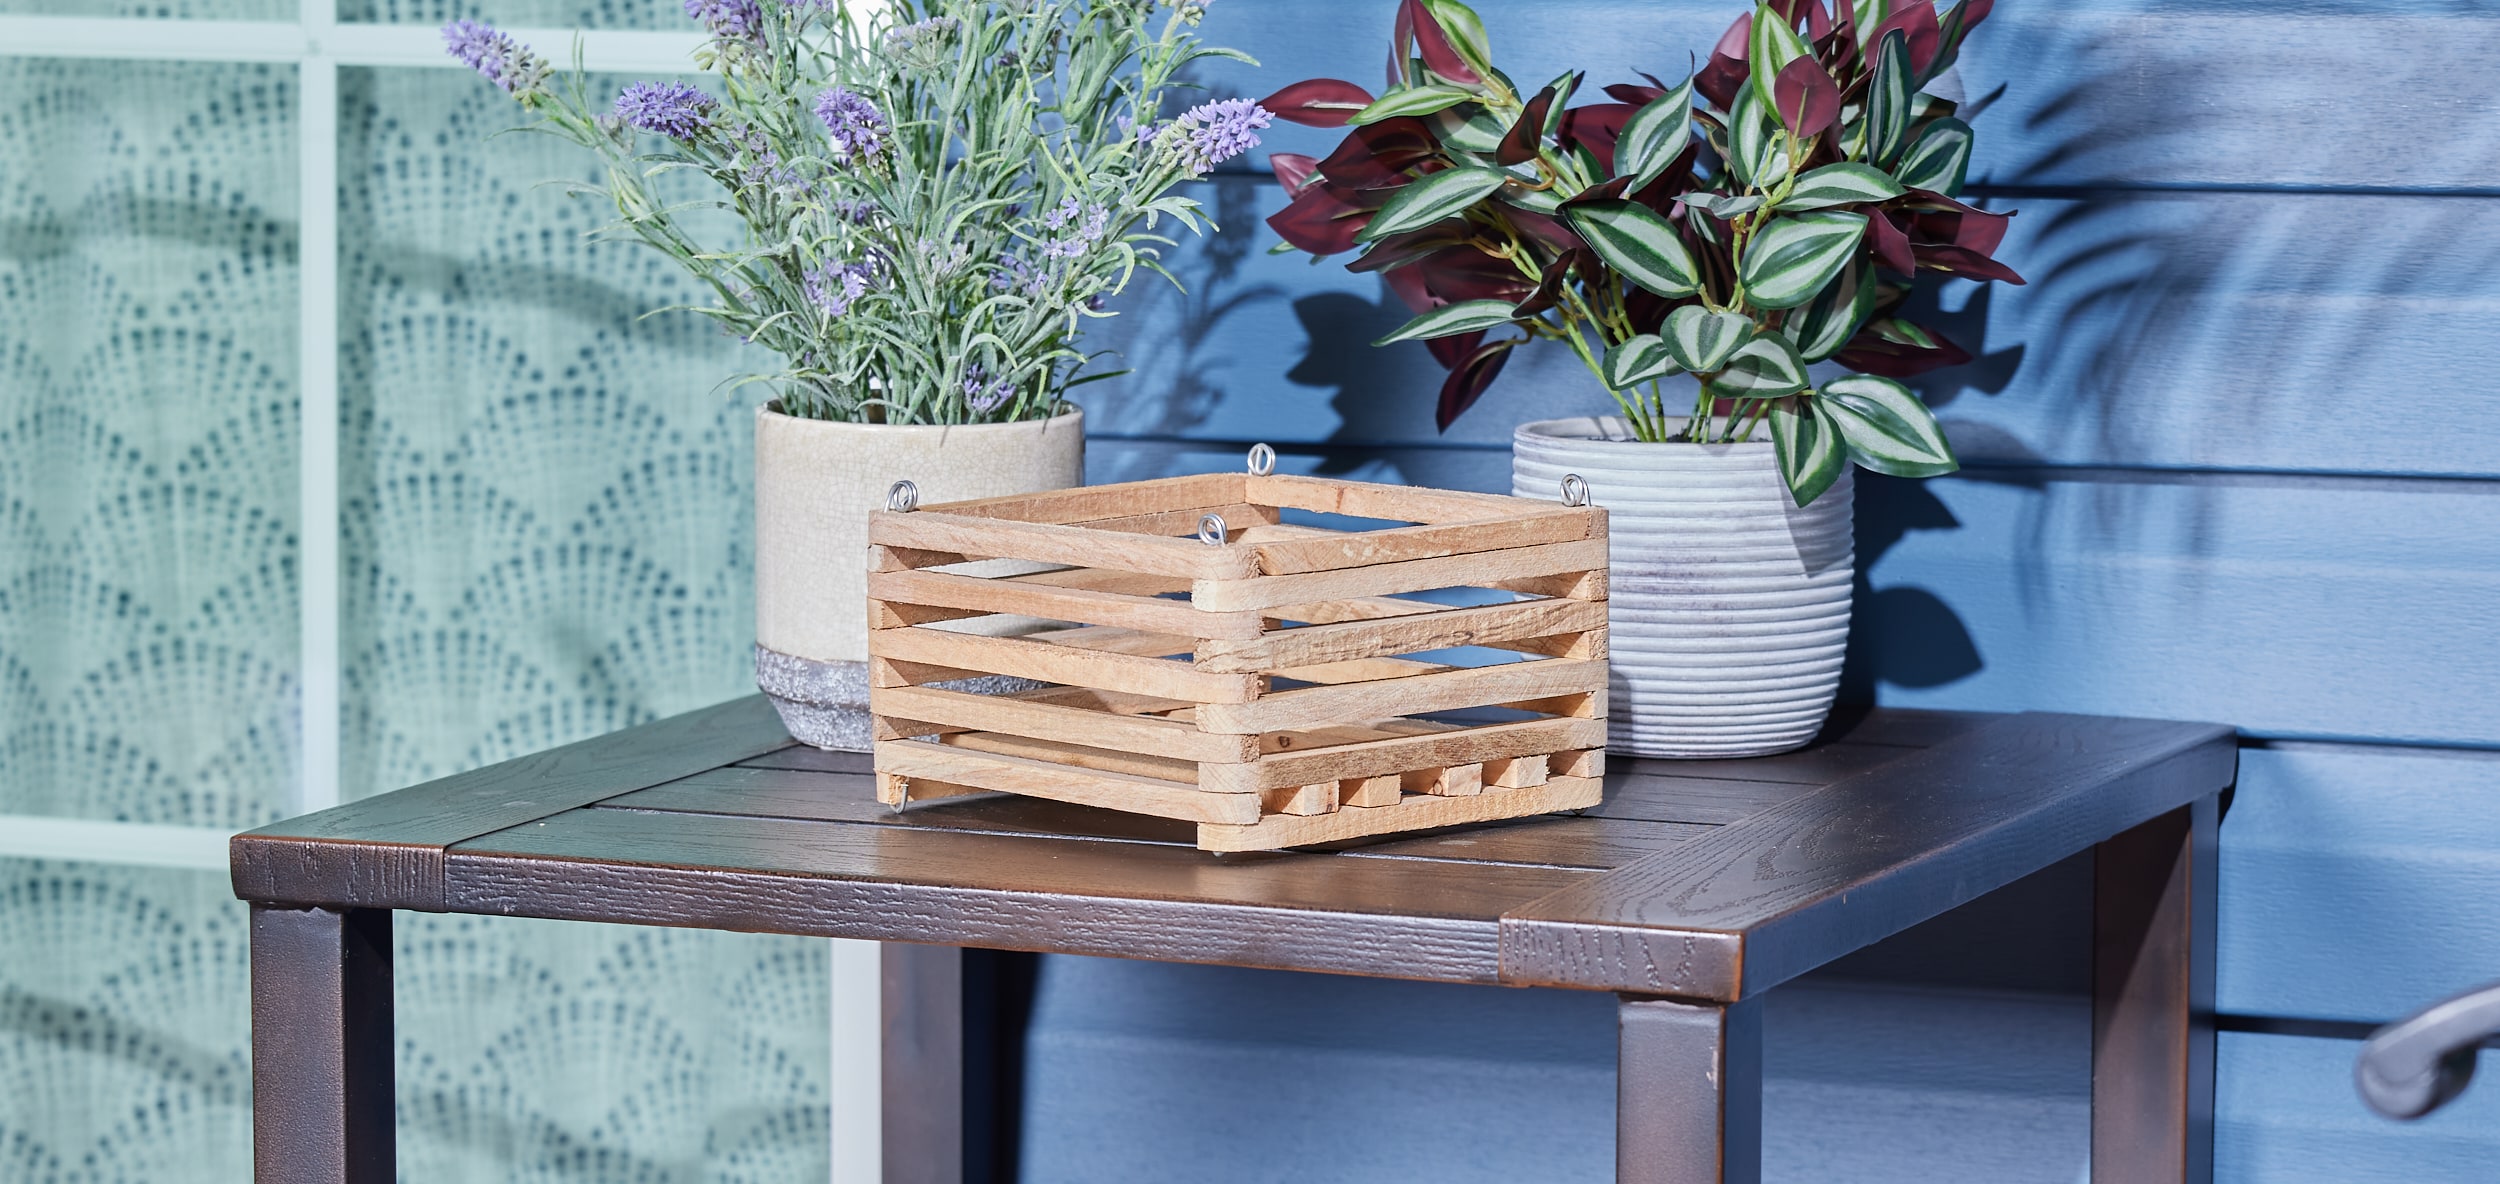 Easy DIY Basket Planter 🌱 How To Make A Cheap Basket Plant Pot 🌿 DIY Boho  Decor 